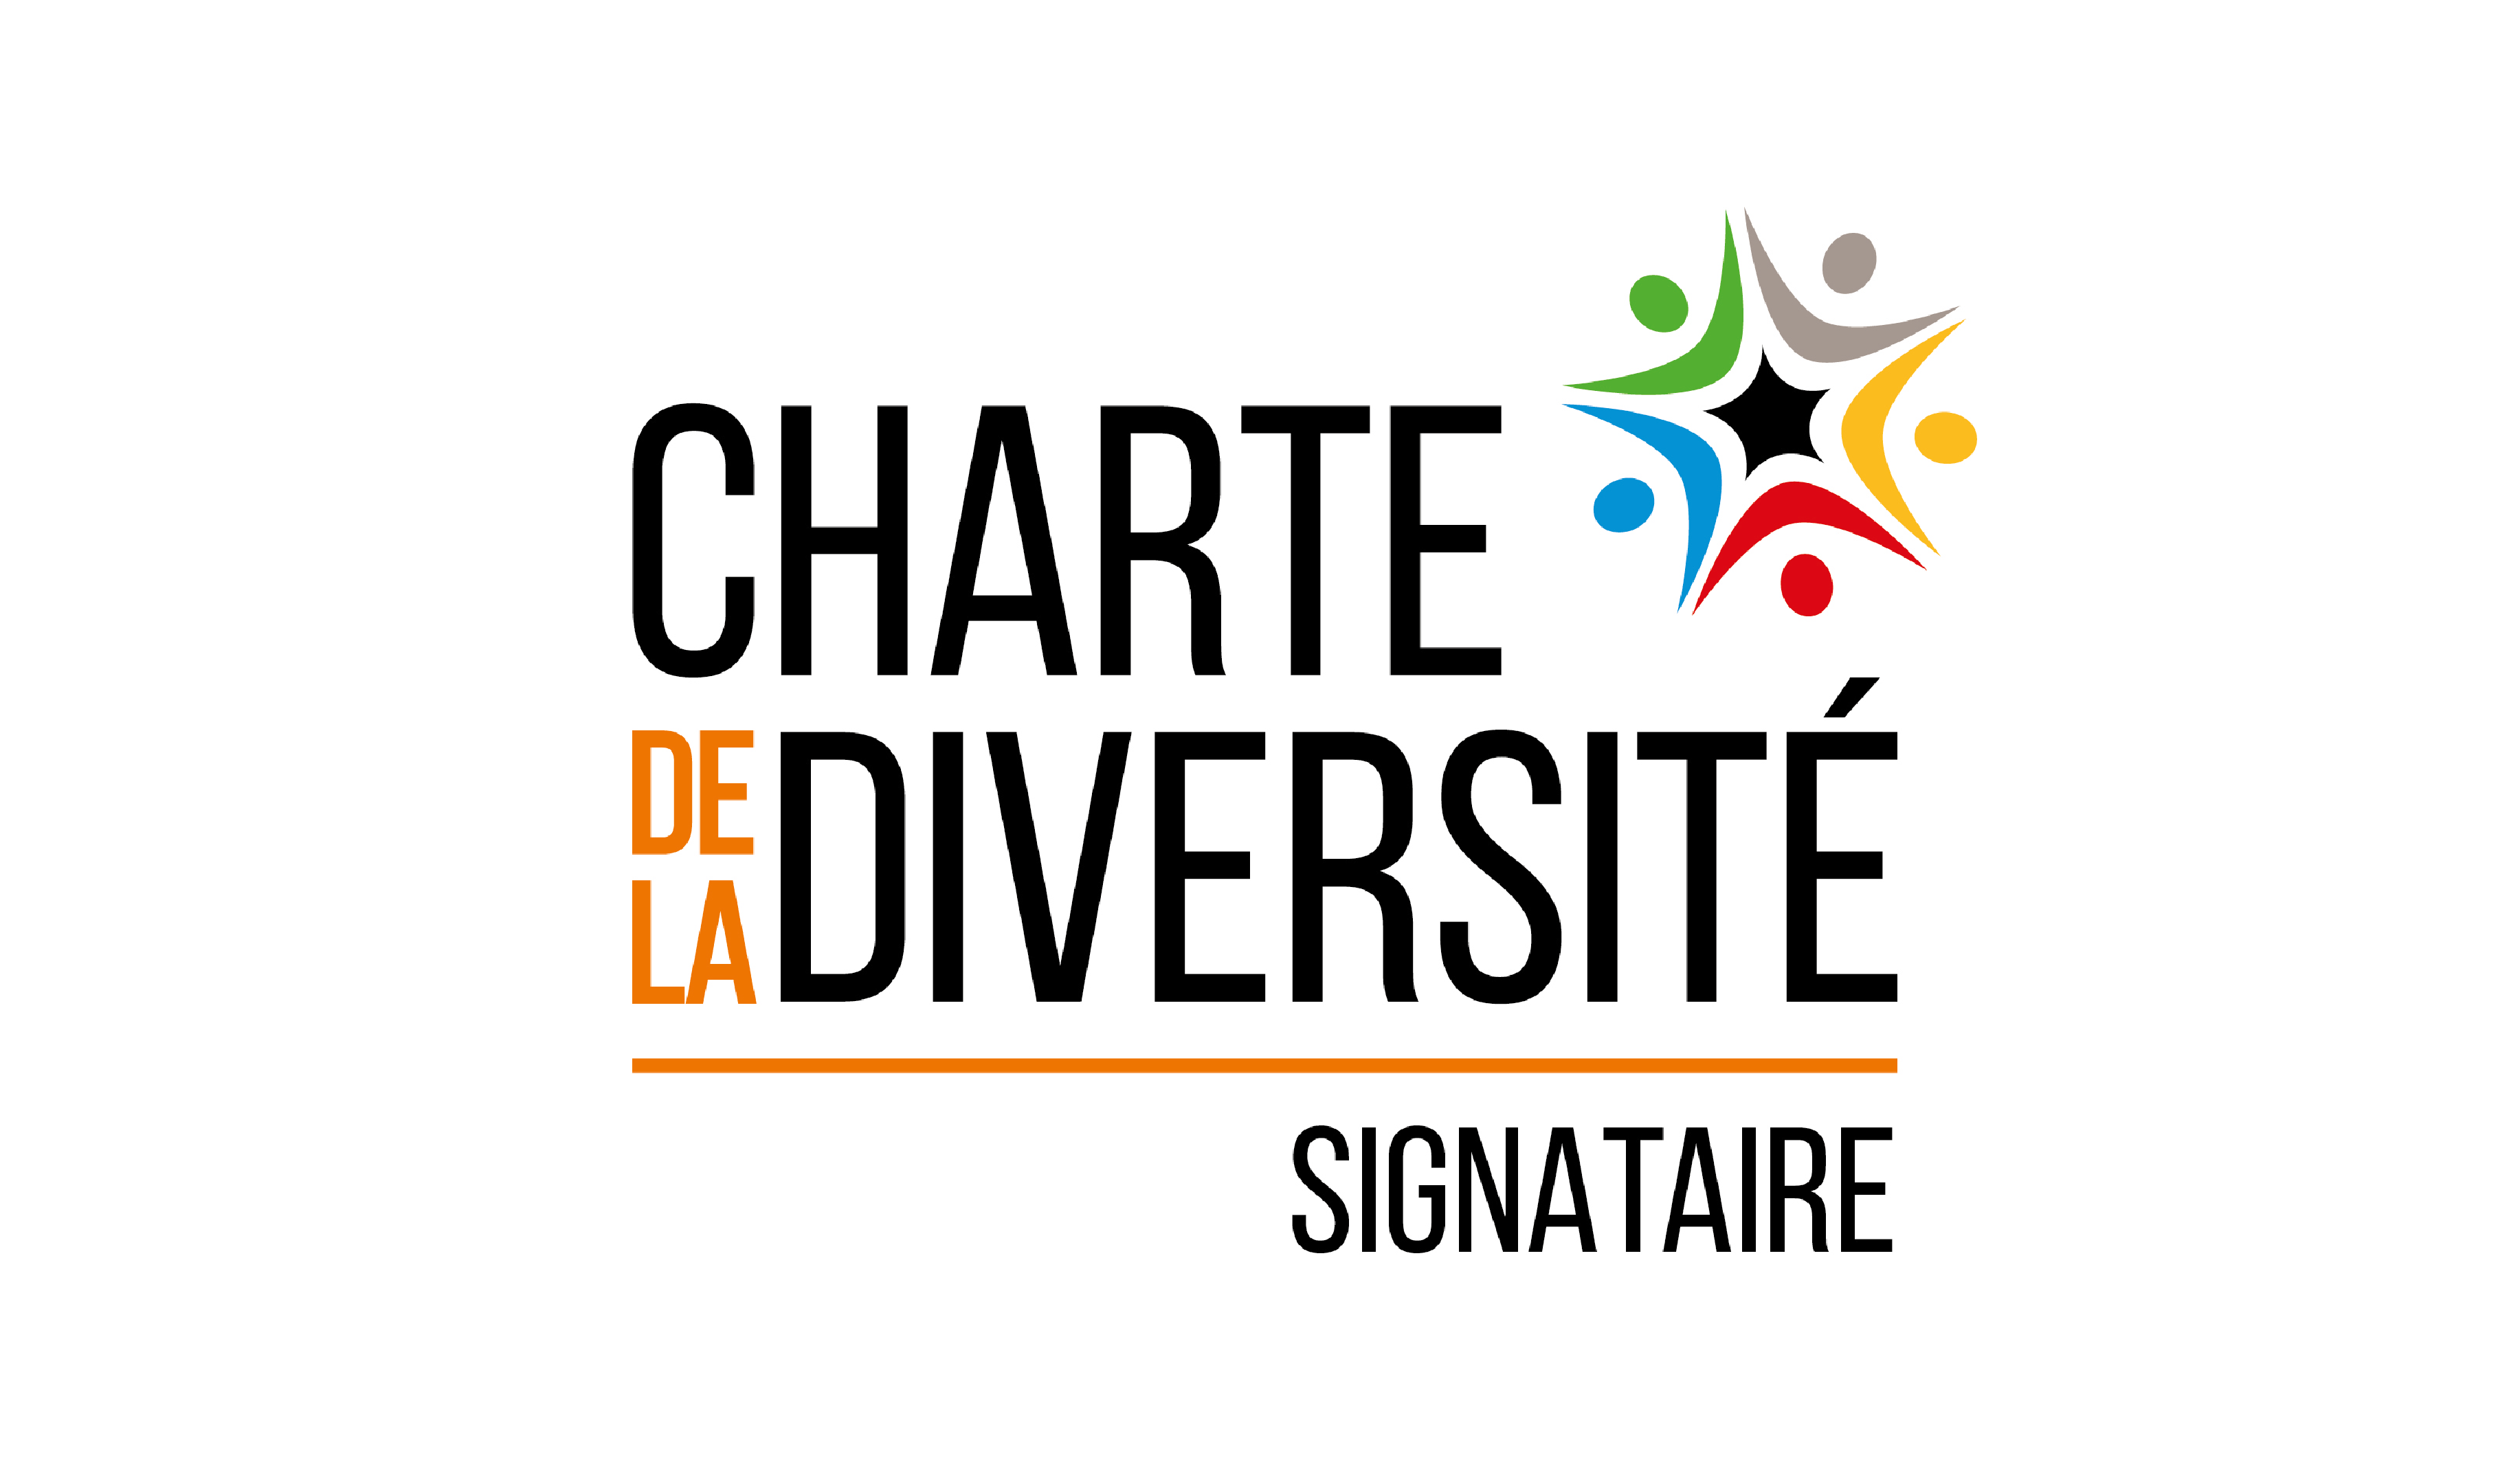 Charte de la Diversité, Externatic s’engage !